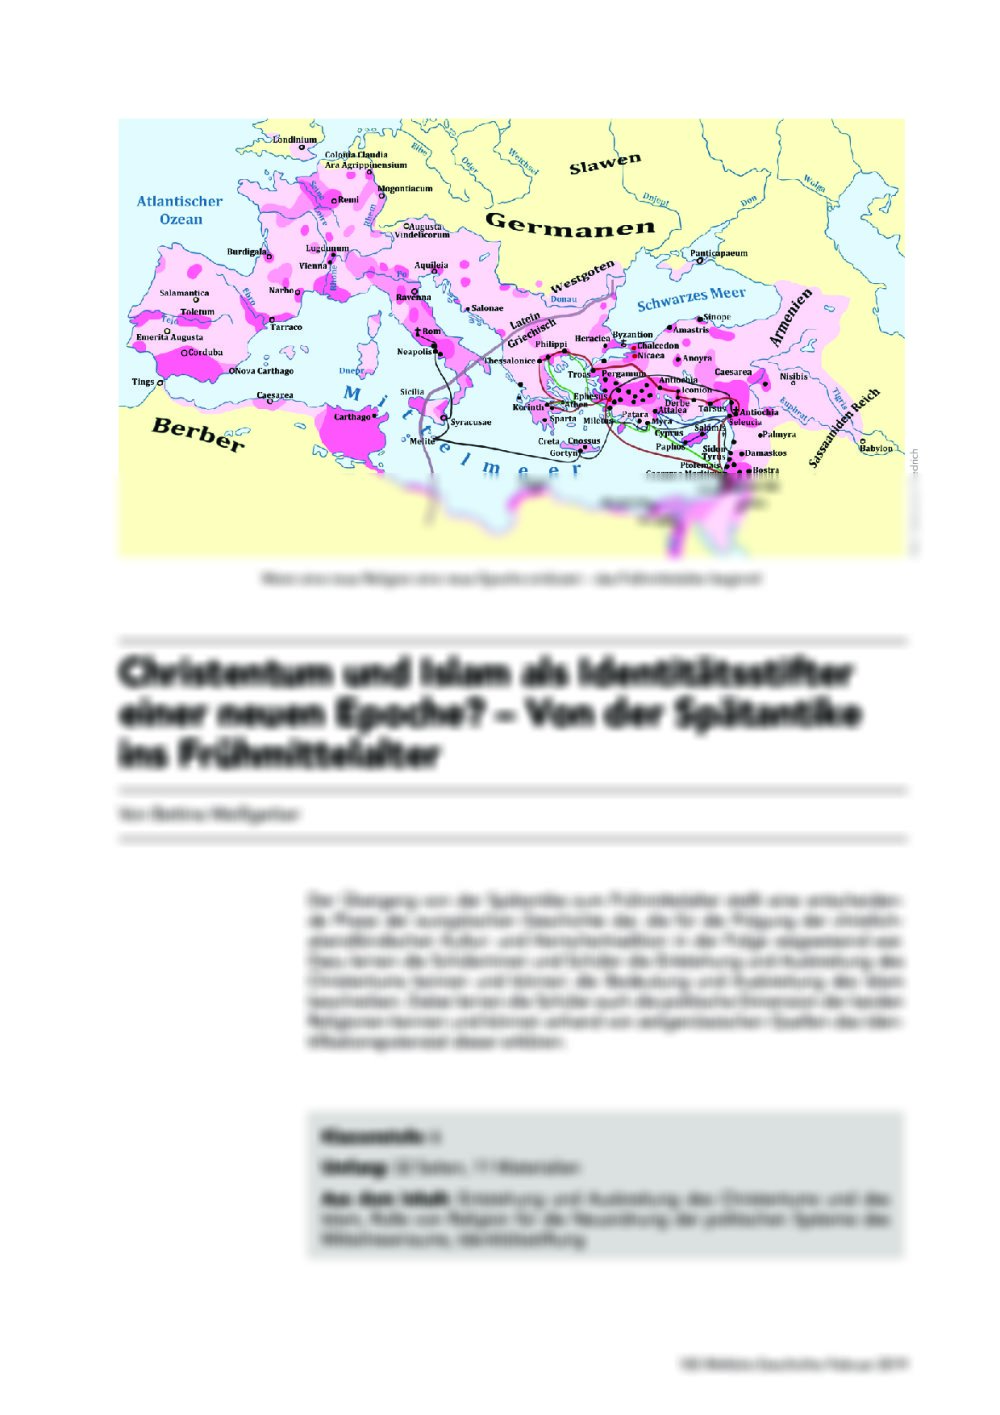 Christentum und Islam als Identitätsstifter einer neuen Epoche? - Seite 1